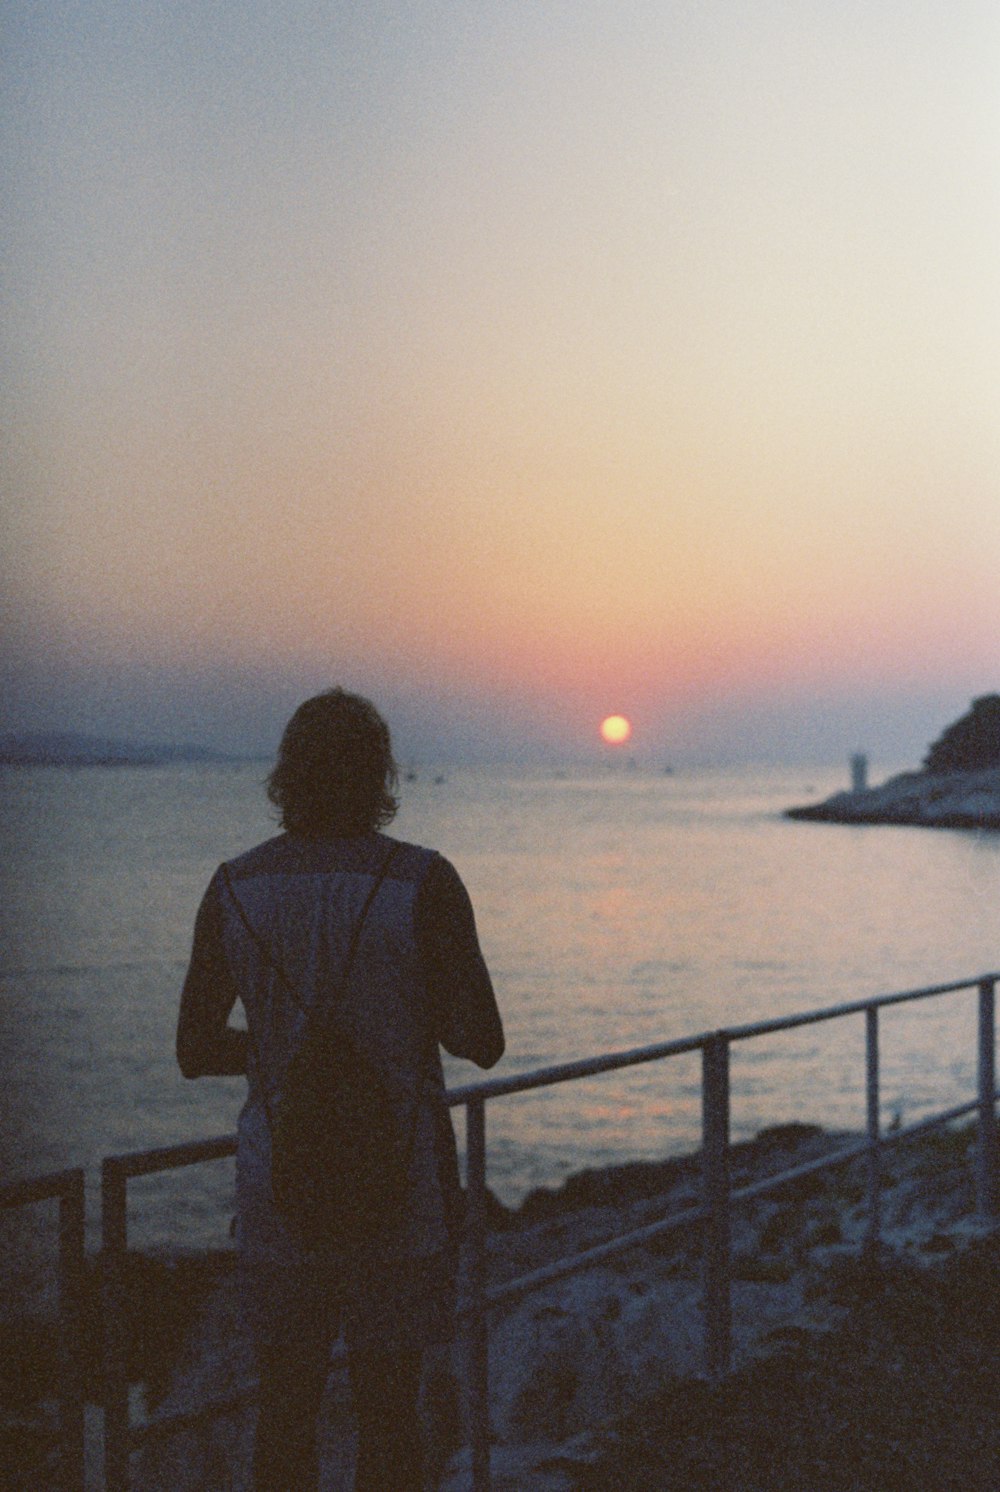 uma pessoa em pé em uma praia observando o pôr do sol